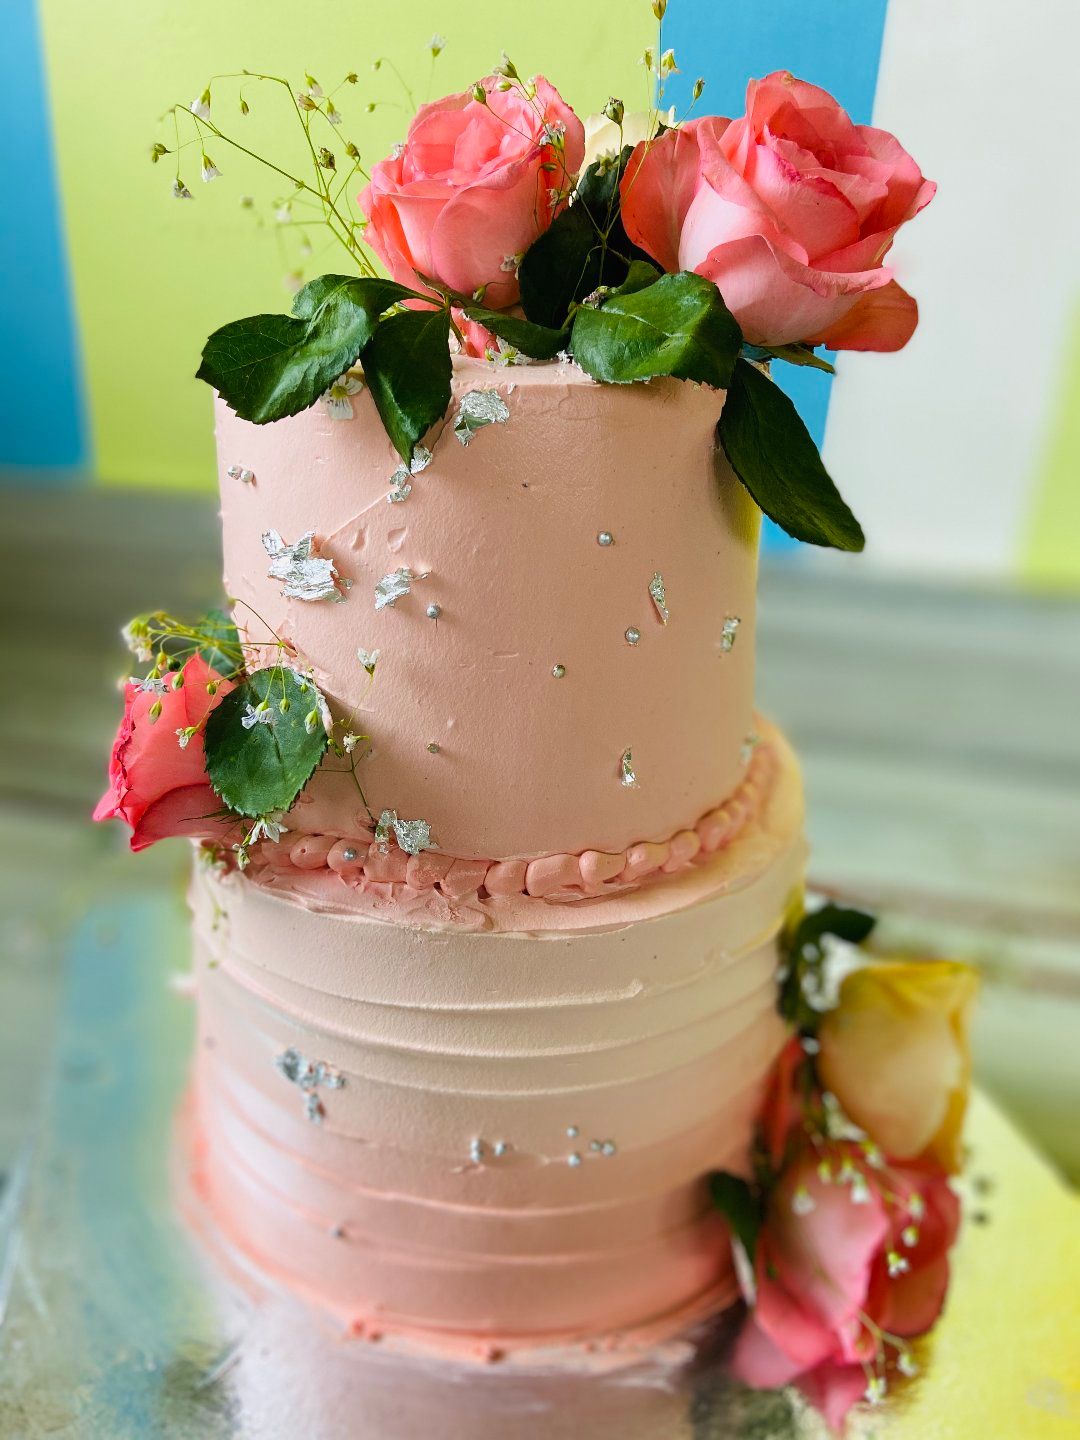 Order Festive Holi Red Velvet Cake Online, Price Rs.995 | FlowerAura